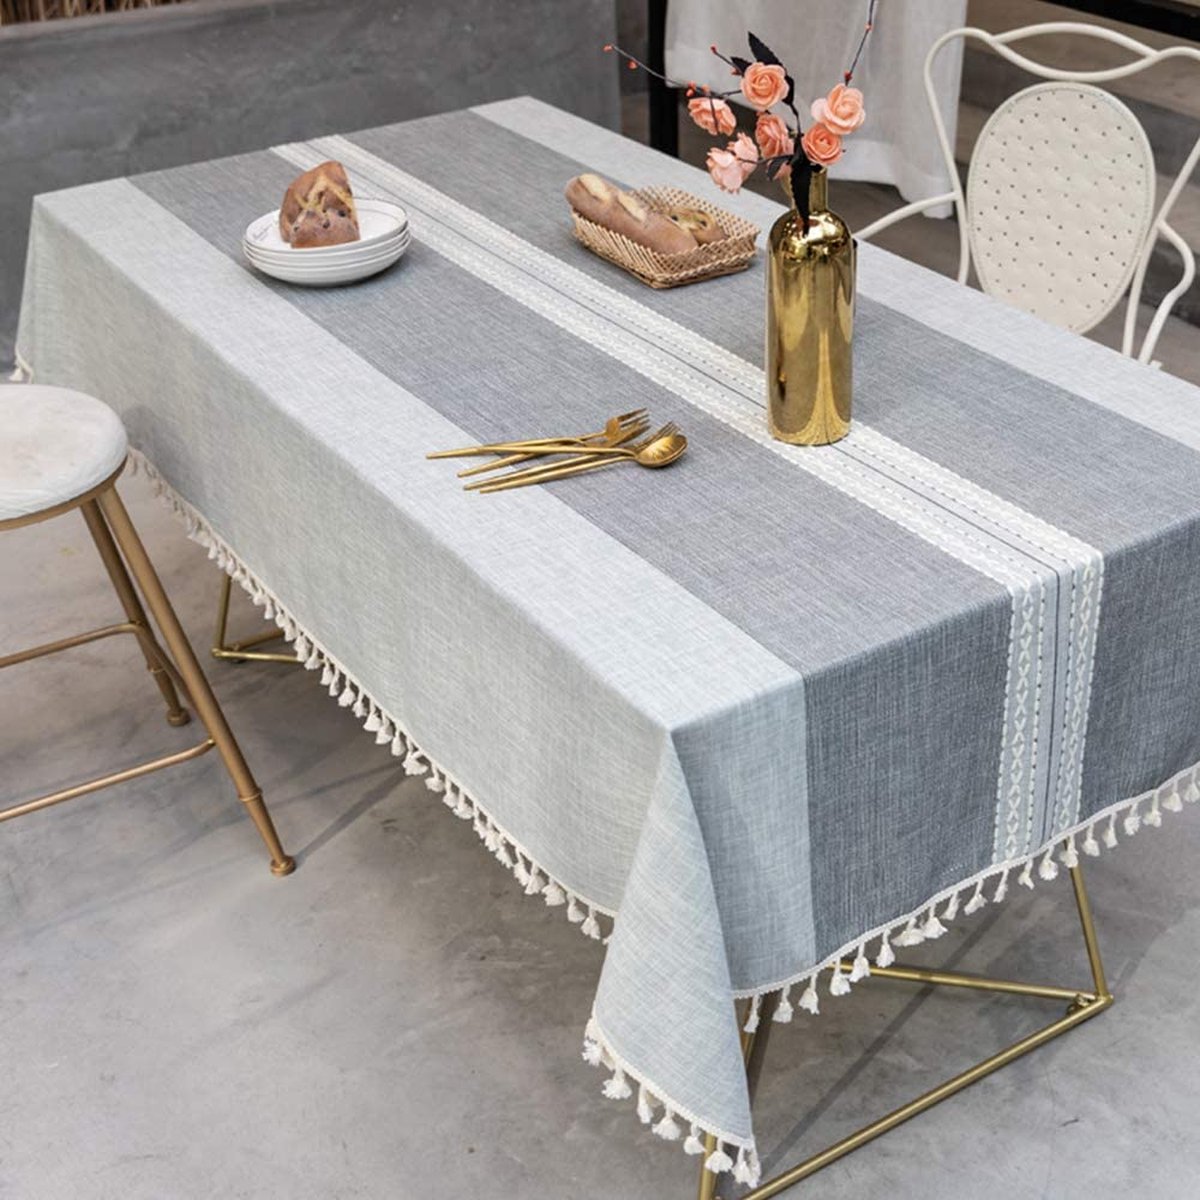 Topmail Rechthoekig tafelkleed, tafellinnen, afwasbaar tafelzeil, van 80% katoen en 20% linnen, geschikt voor thuis, keukendecoratie (grijs rechthoek, 140 x 180 cm)